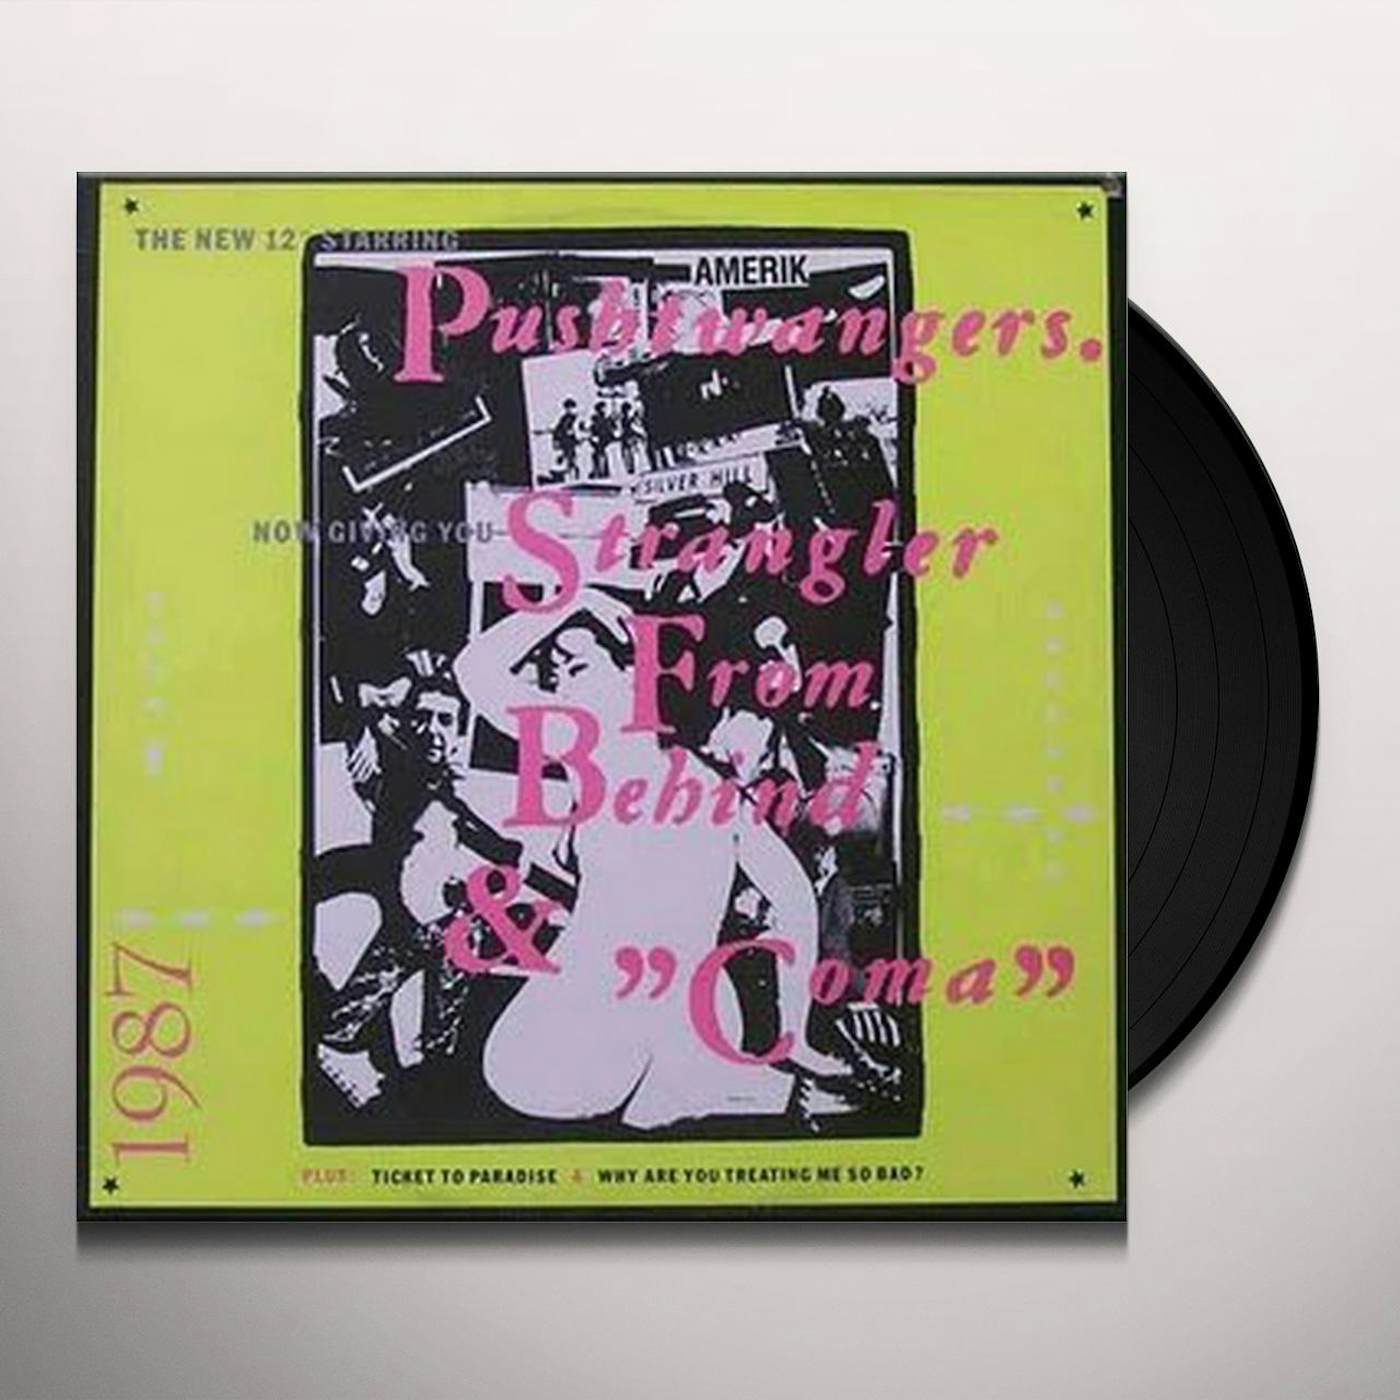 Pushtwangers Strangler From Behind Vinyl Record